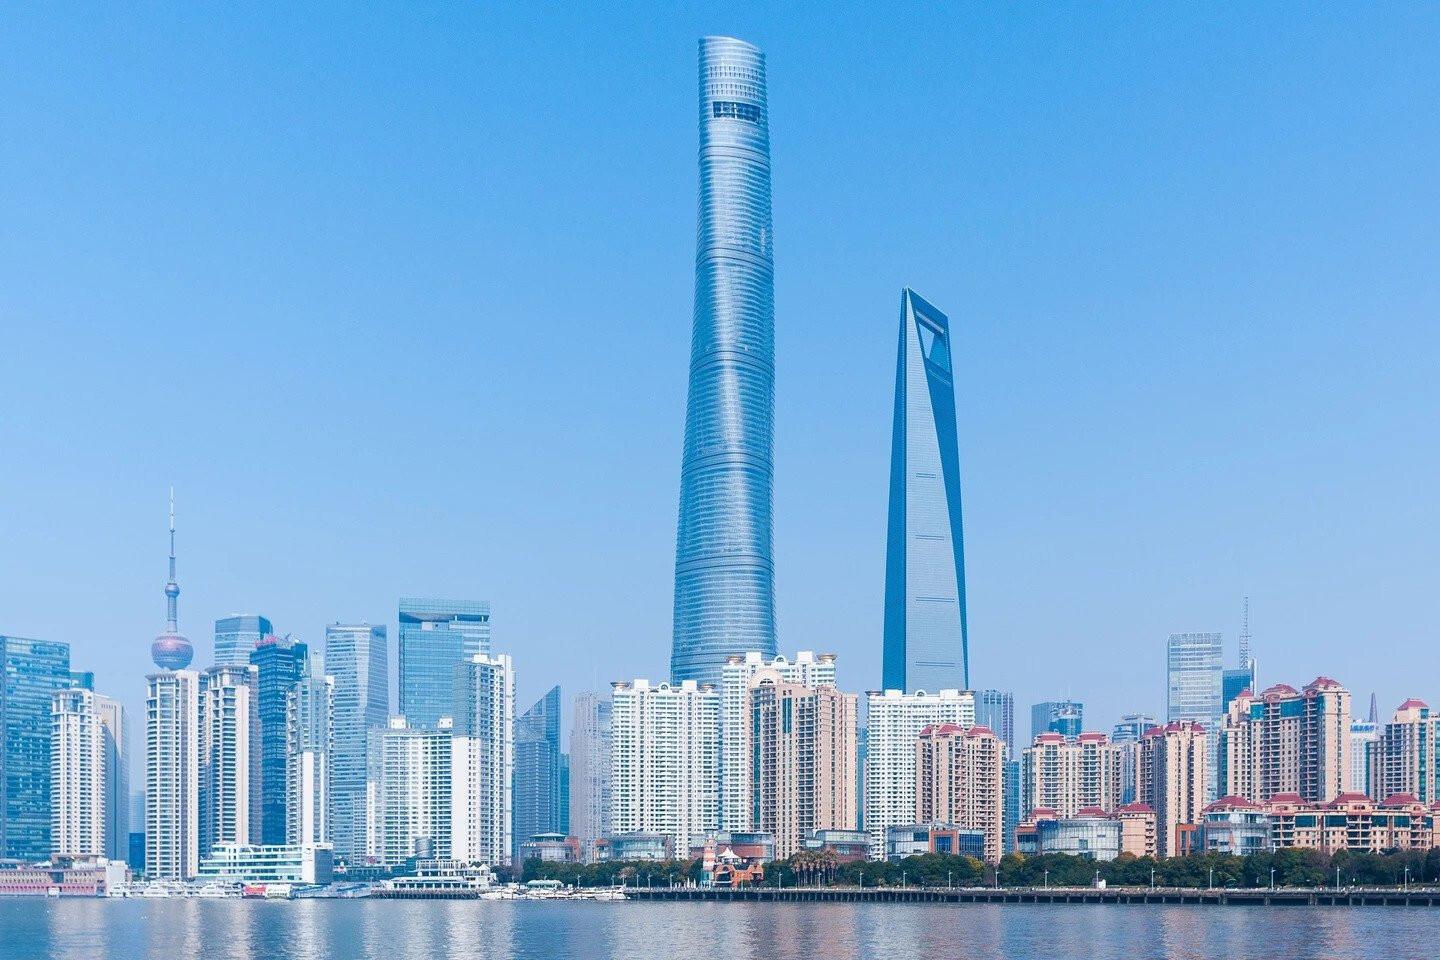 Tòa nhà cao nhất Trung Quốc: Thiết kế phức tạp, hơn 100 thang máy siêu tốc - 1